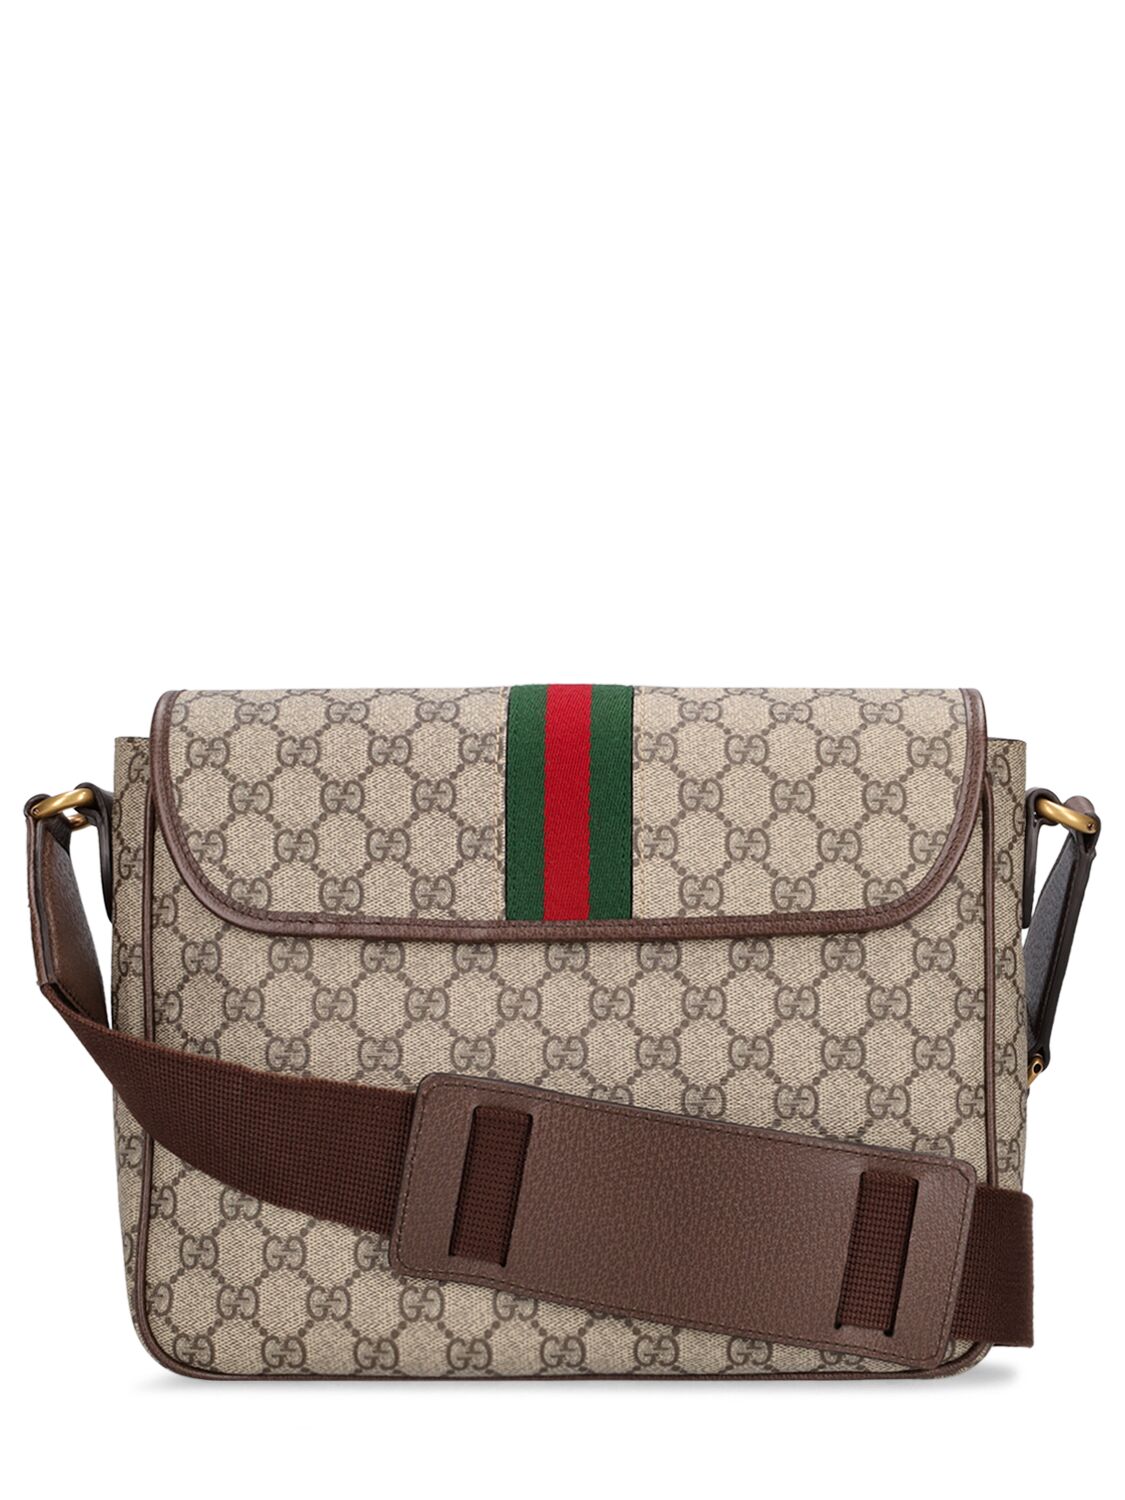 Shop Gucci Ophidia Gg Supreme Medium Crossbody Bag In Beige,ebony